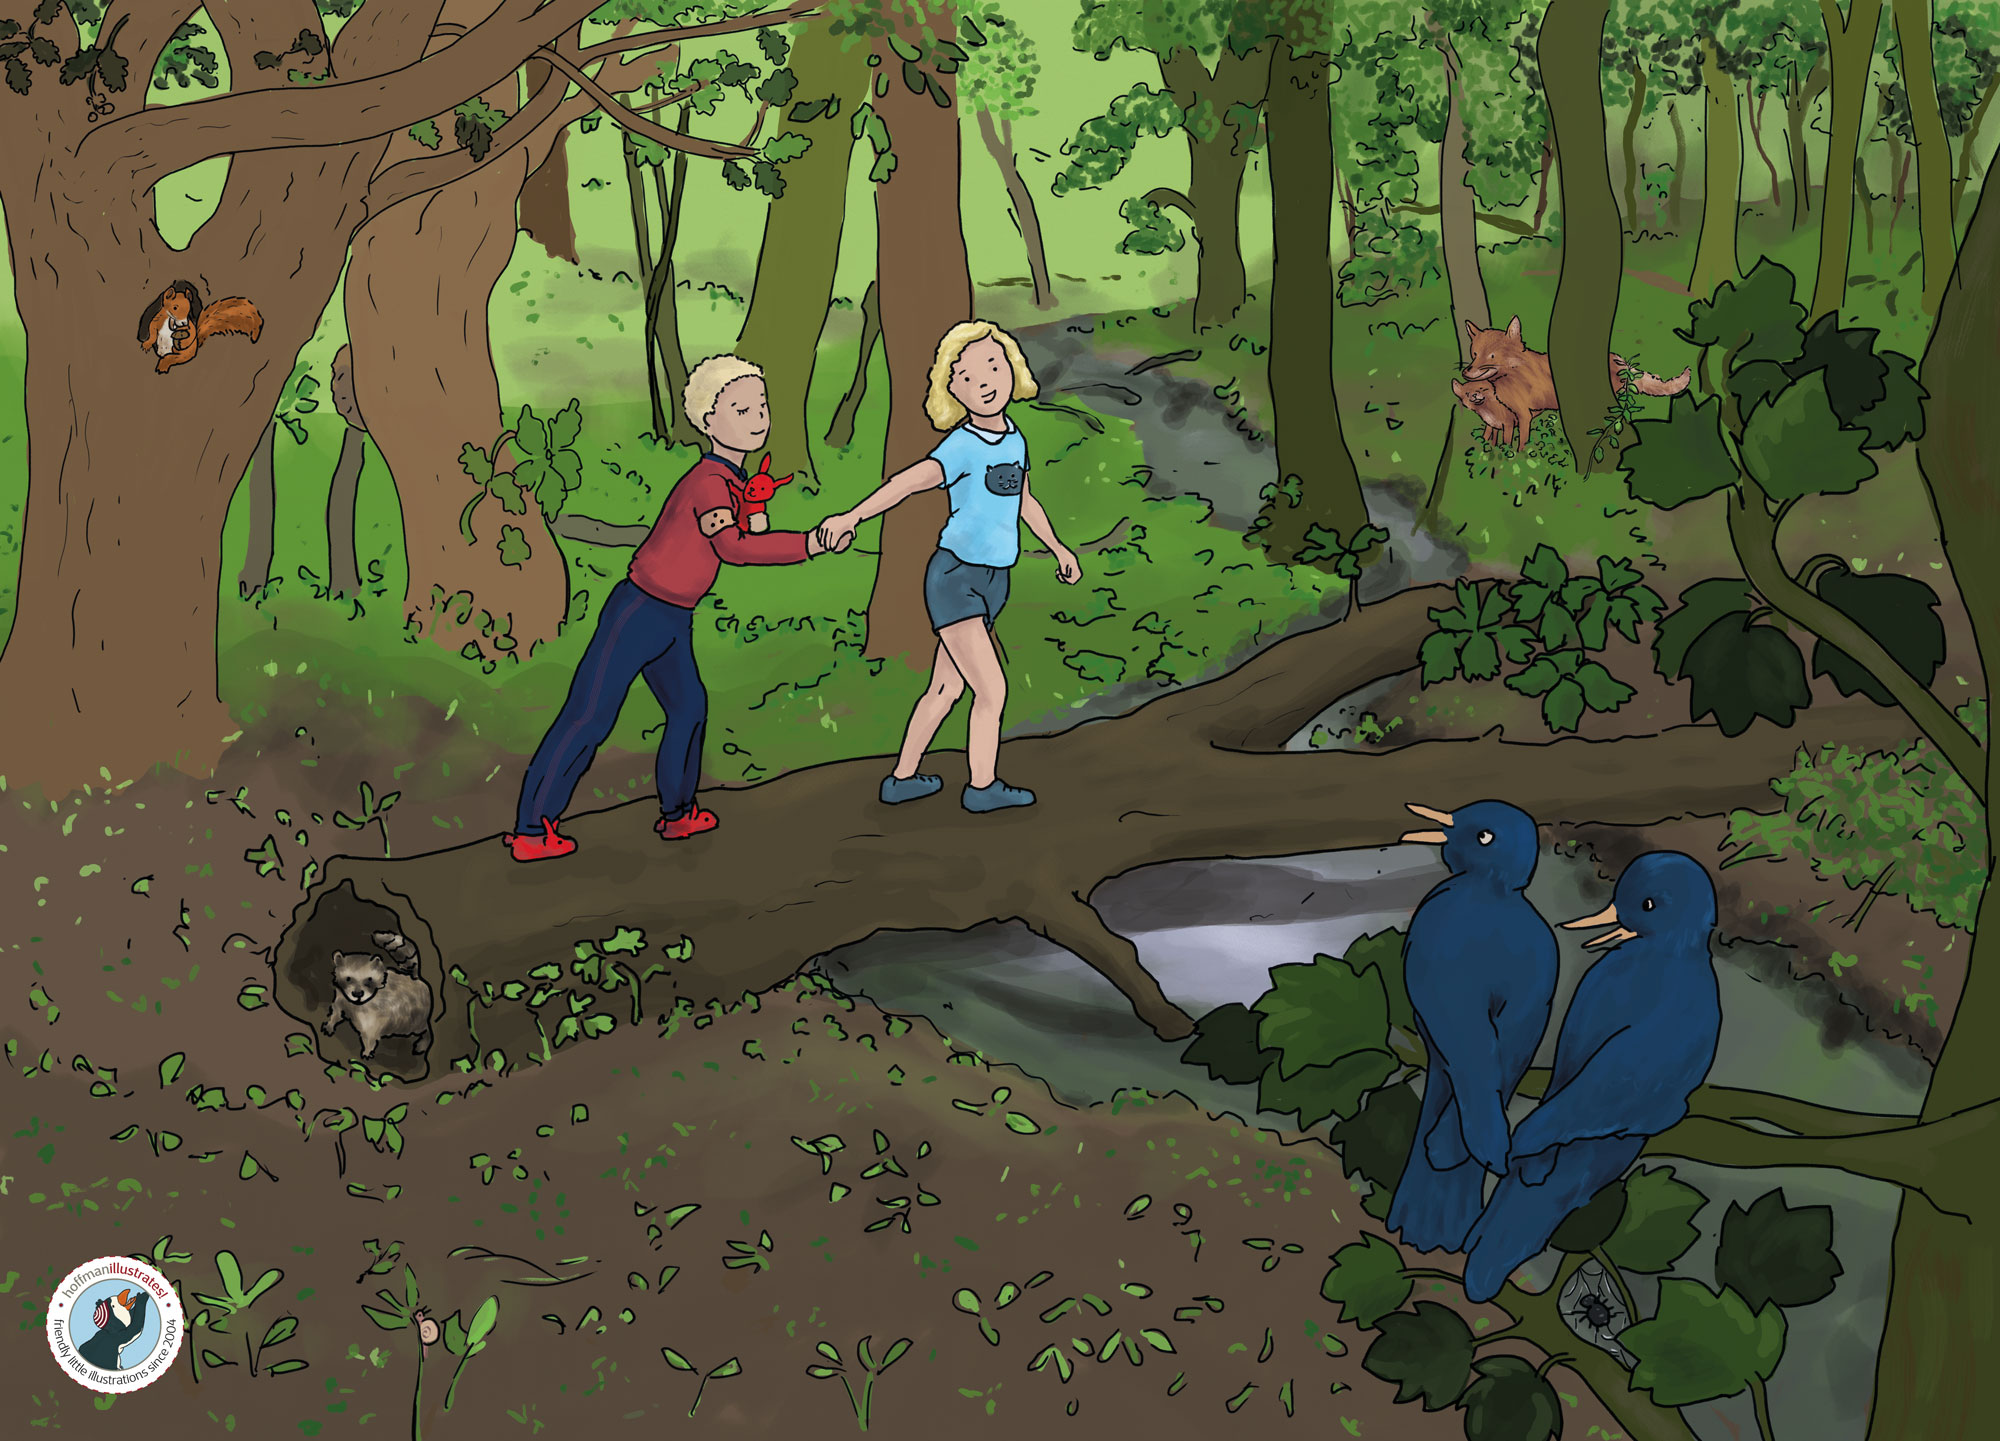 Illustration von zwei Kindern im Wald. Dies ist eine Traumsequenz. Der Junge träumt, dass er blind ist und sein Freundin ihn durch den Wald führt. Der Junge ist in seinem Schlafanzug, das Mädchen in ihrer normalen Kleidung zum Spielen.